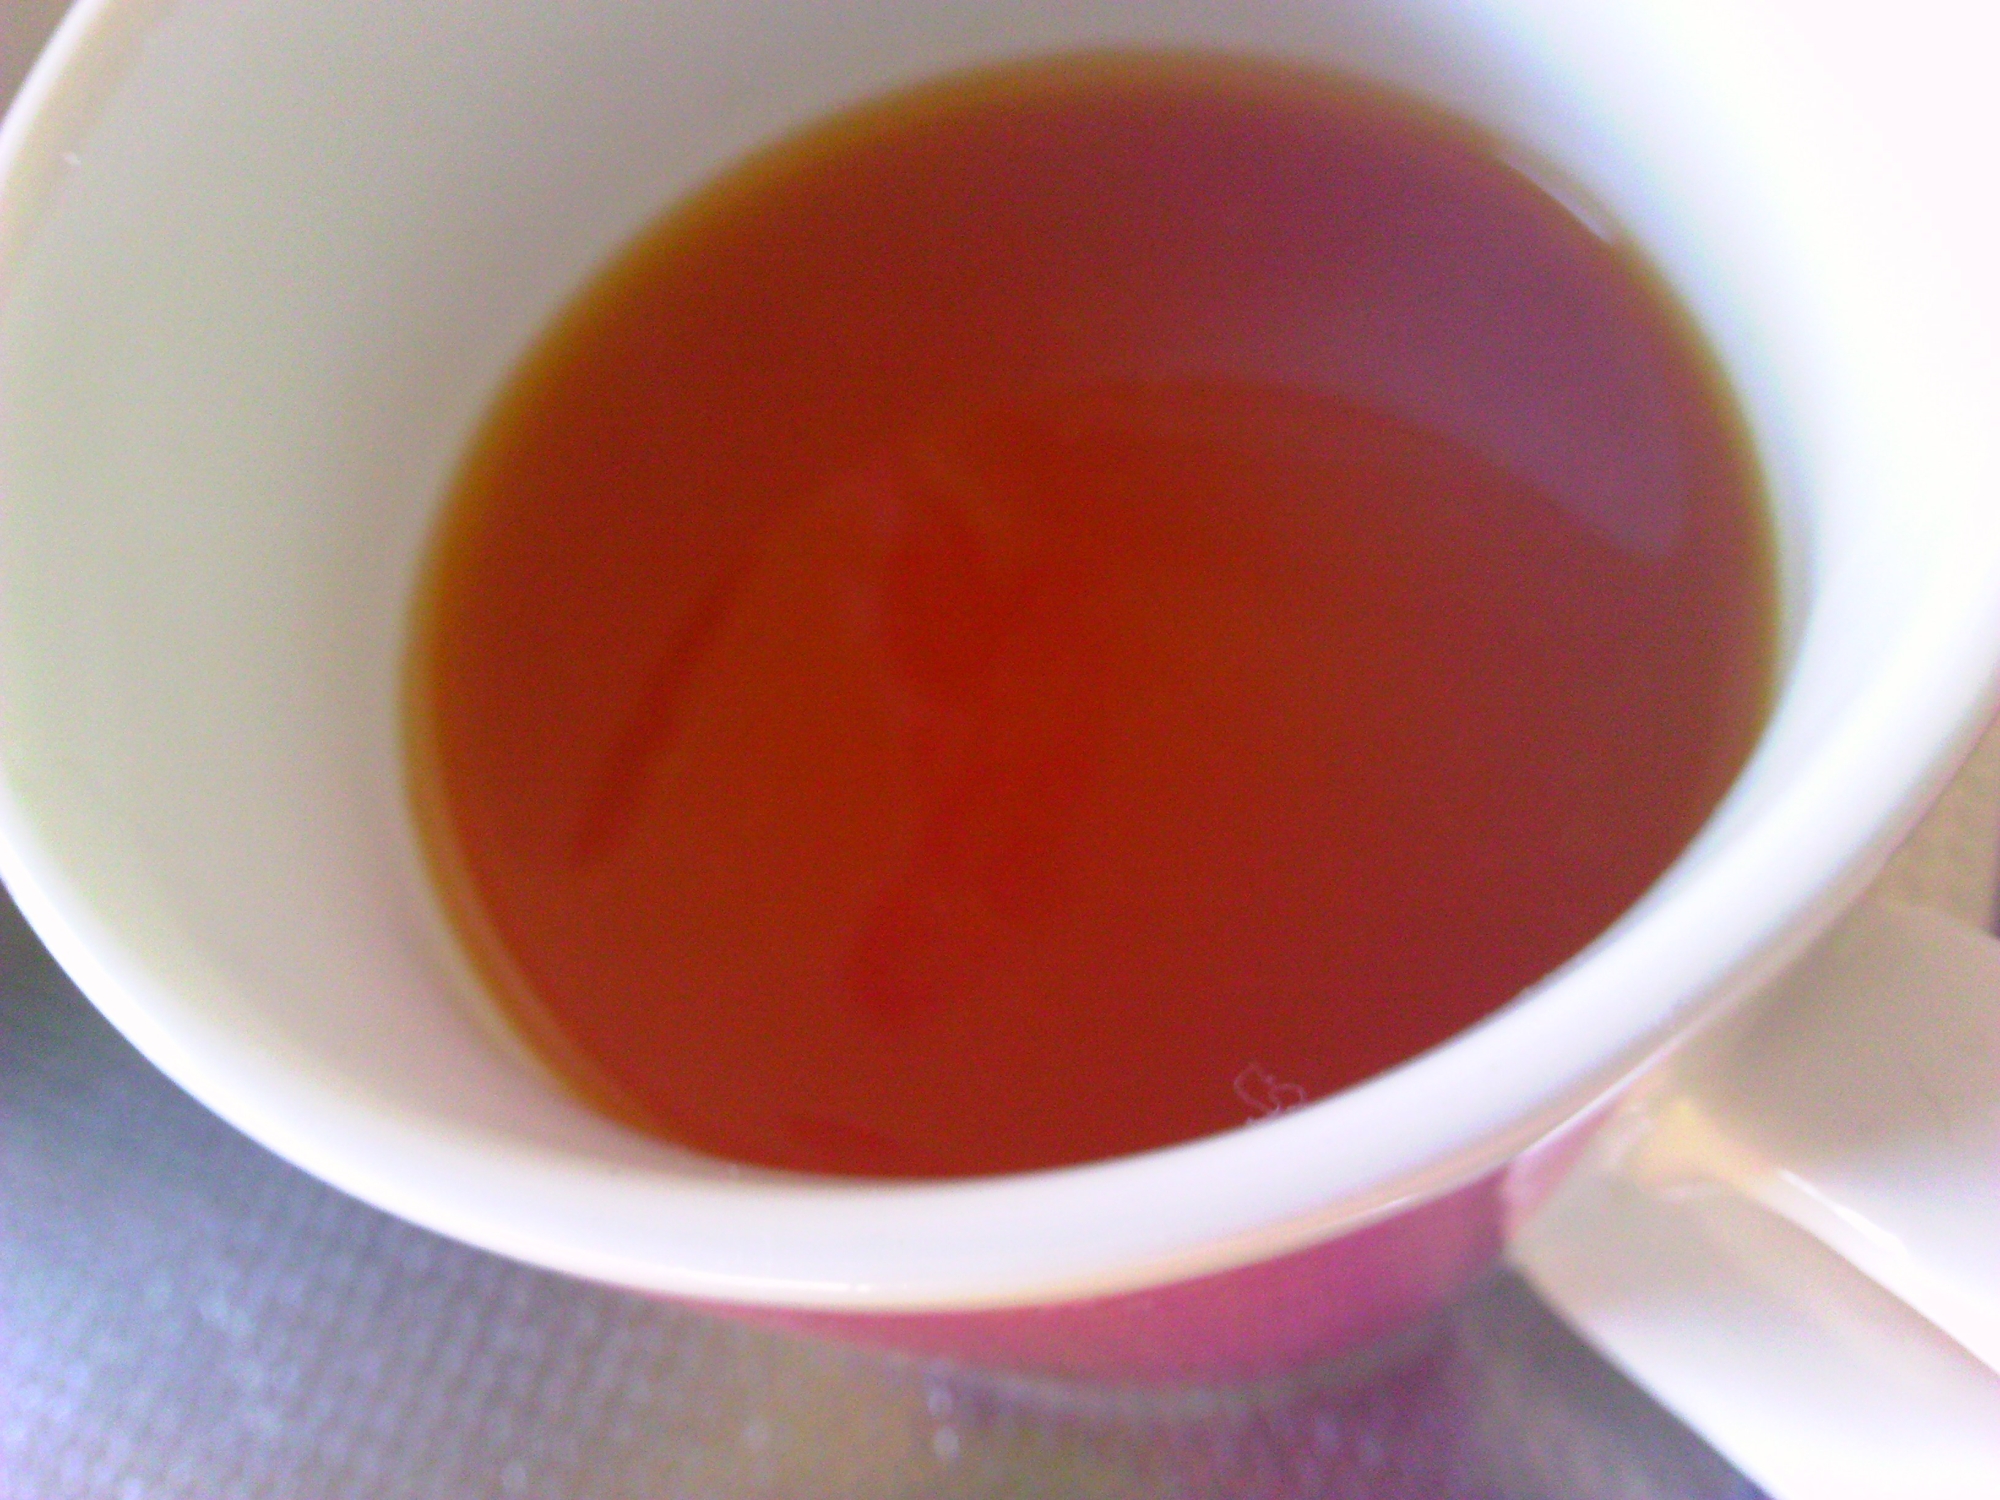 オレンジ生姜紅茶